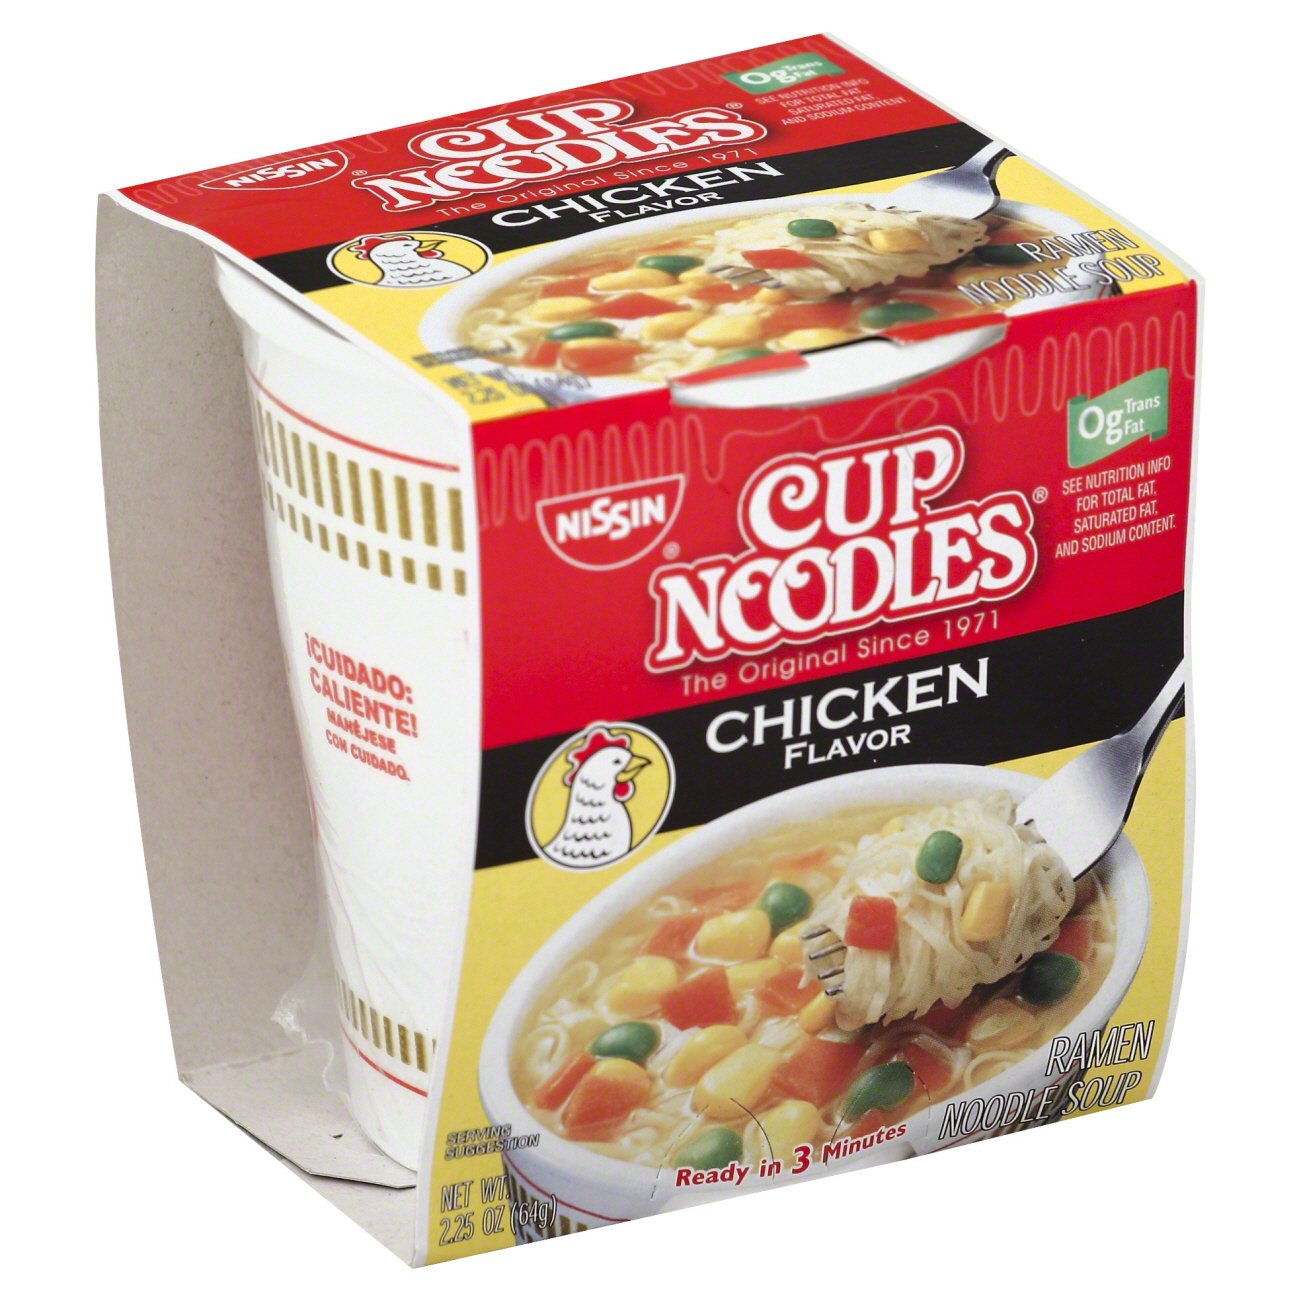 Nissin Cup Noodles Chicken Flavor Noodle Soup Shop Soups Chili At H E B